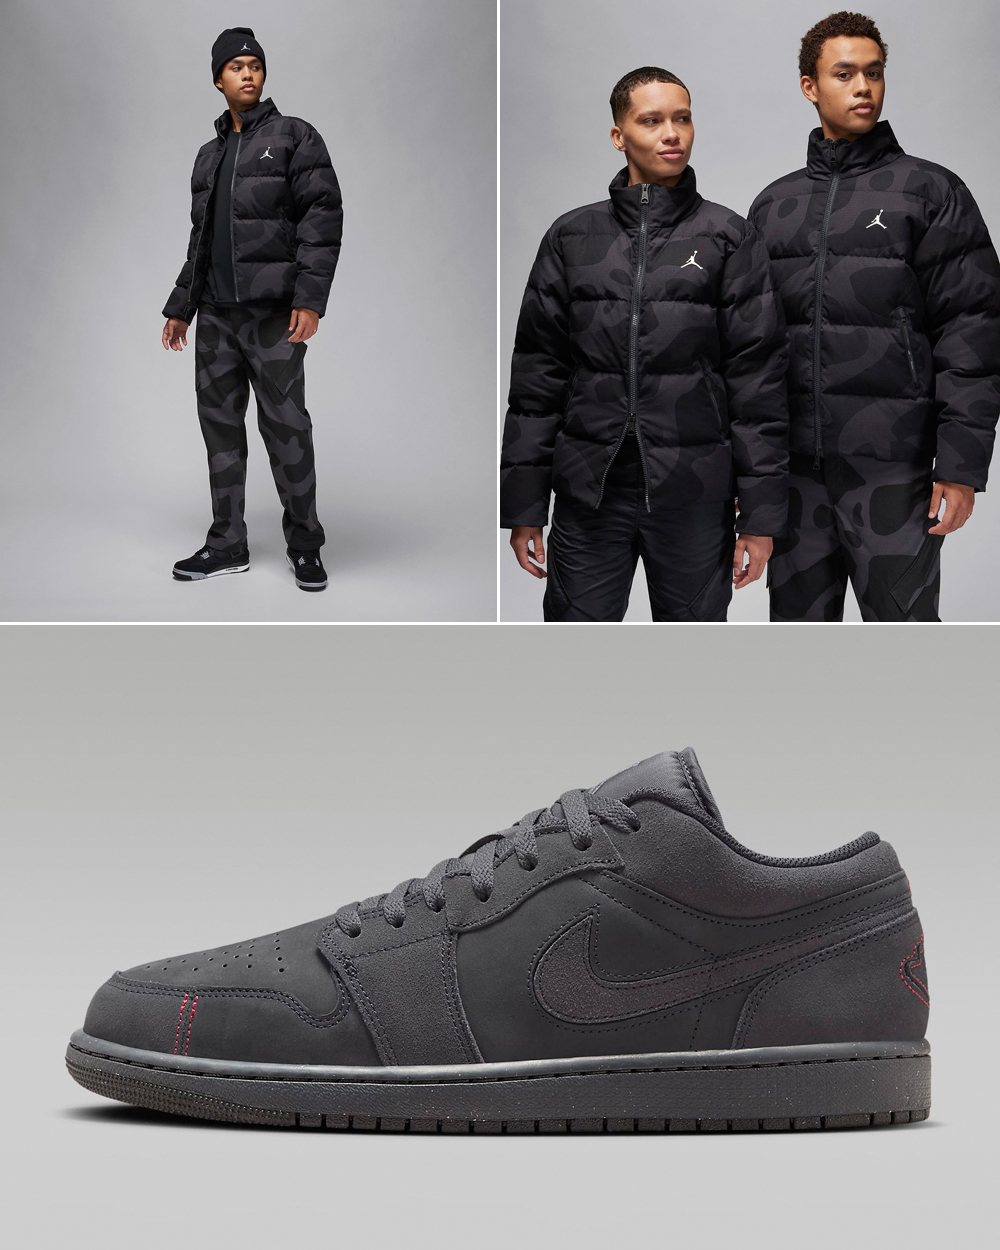 Air-Jordan-1-Low-Craft-Dark-Smoke-Grey-Jacket-Matching-Outfit